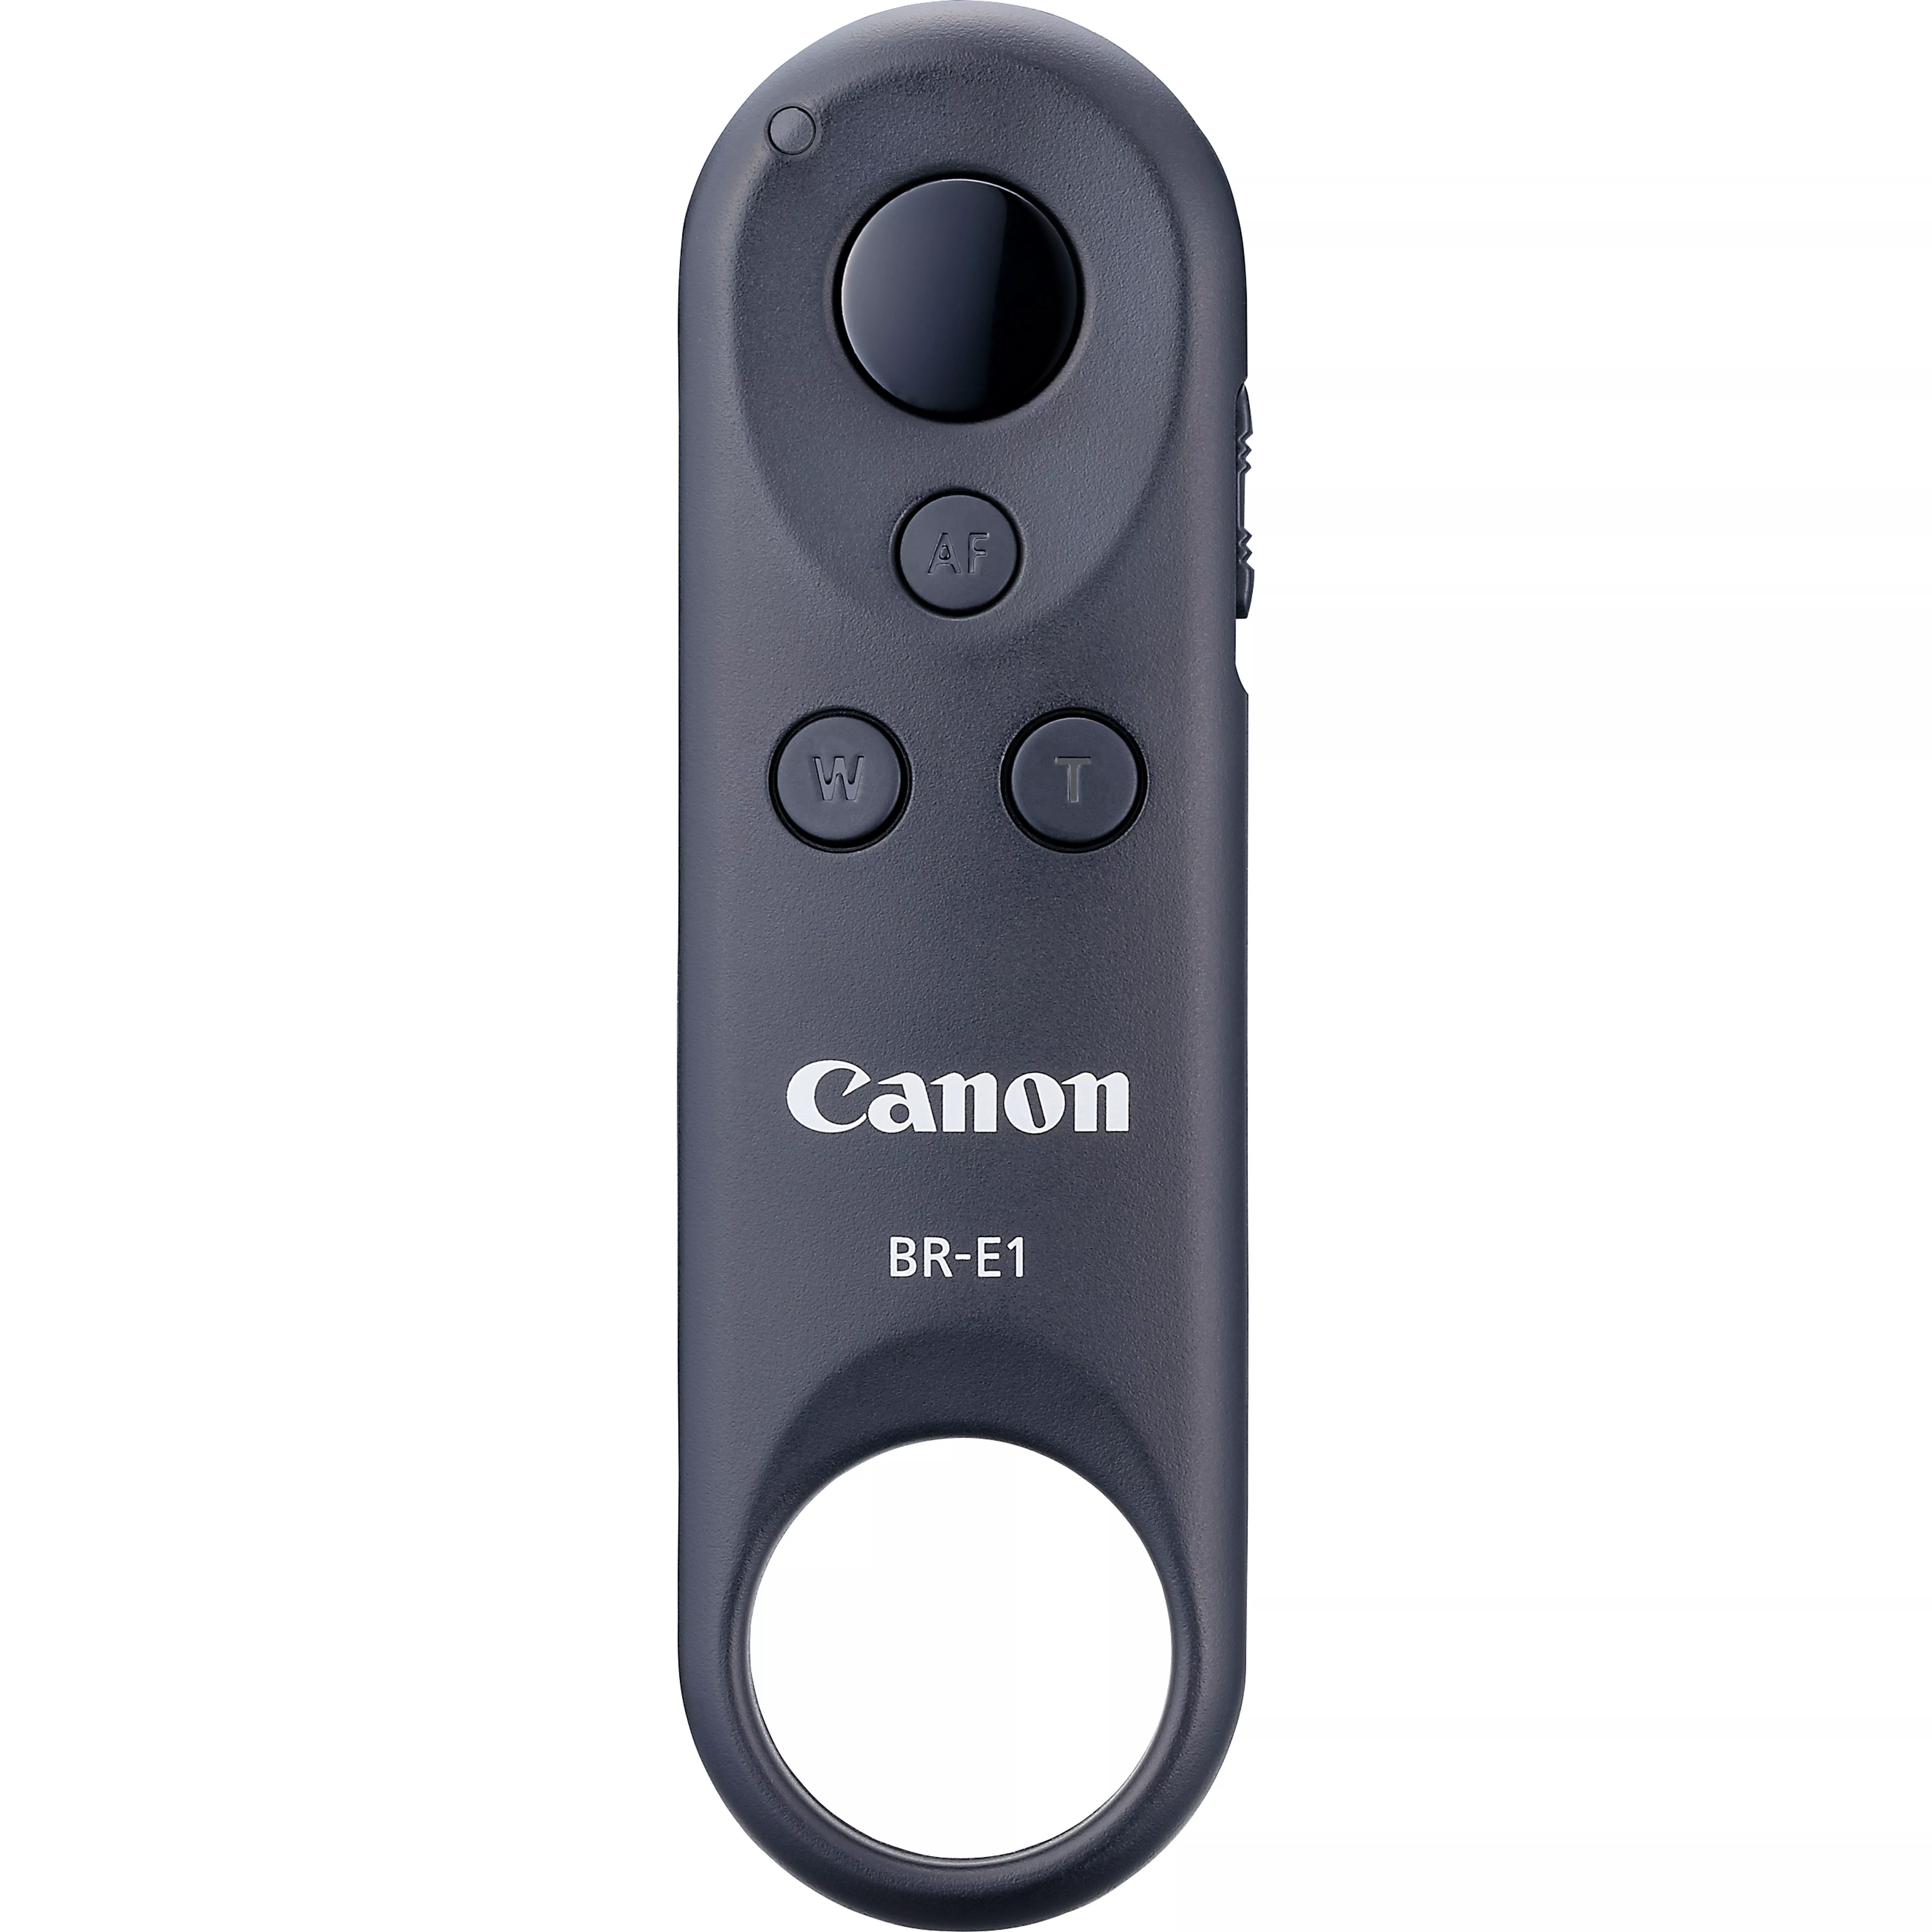 Achat Canon Télécommande sans fil BR-E1 au meilleur prix